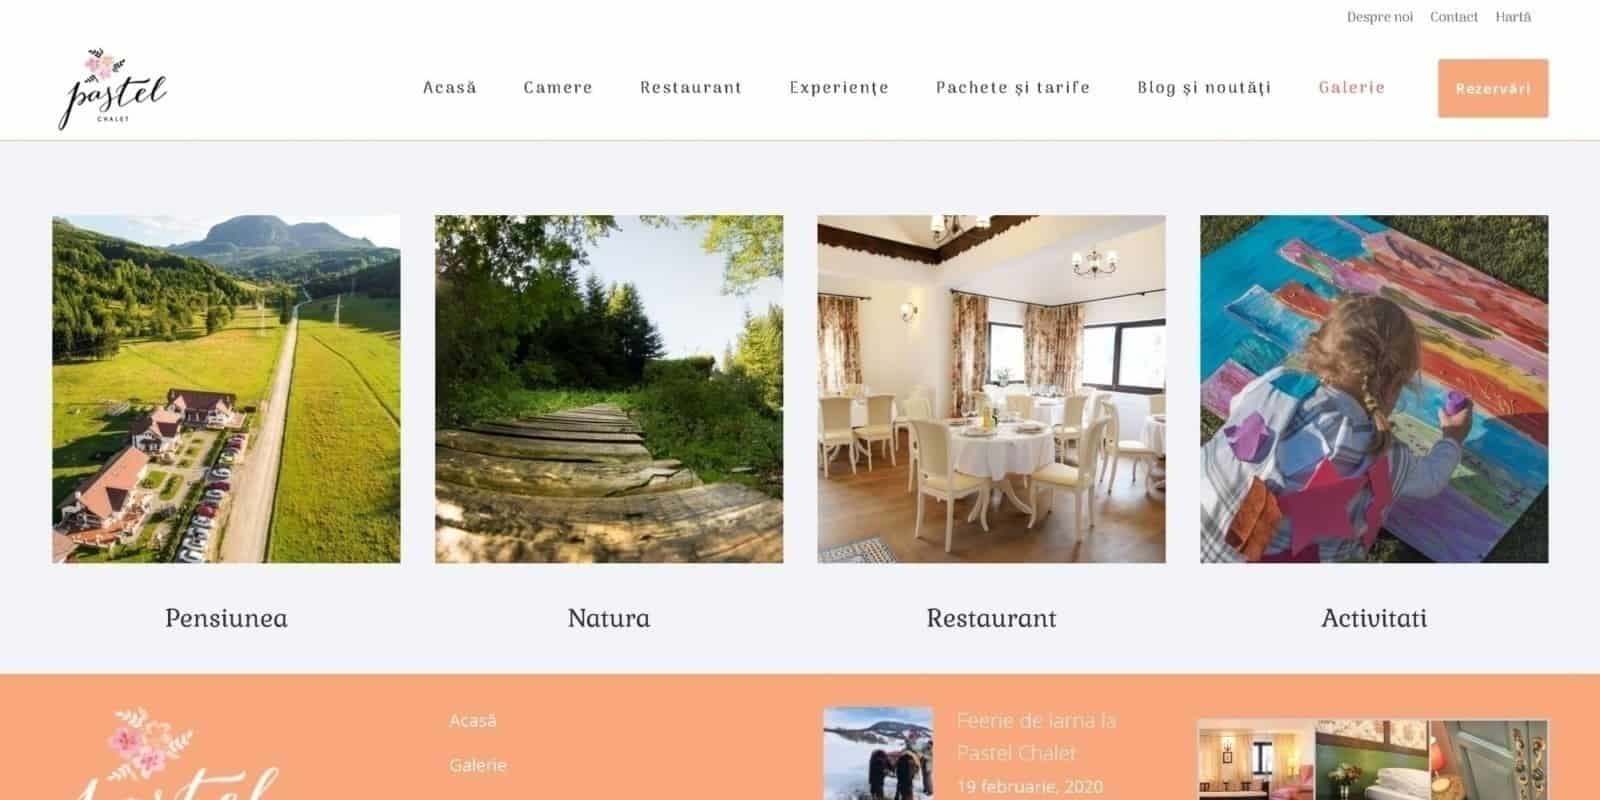 Pastel Chalet, realizare site web, web design, design, website, Toud